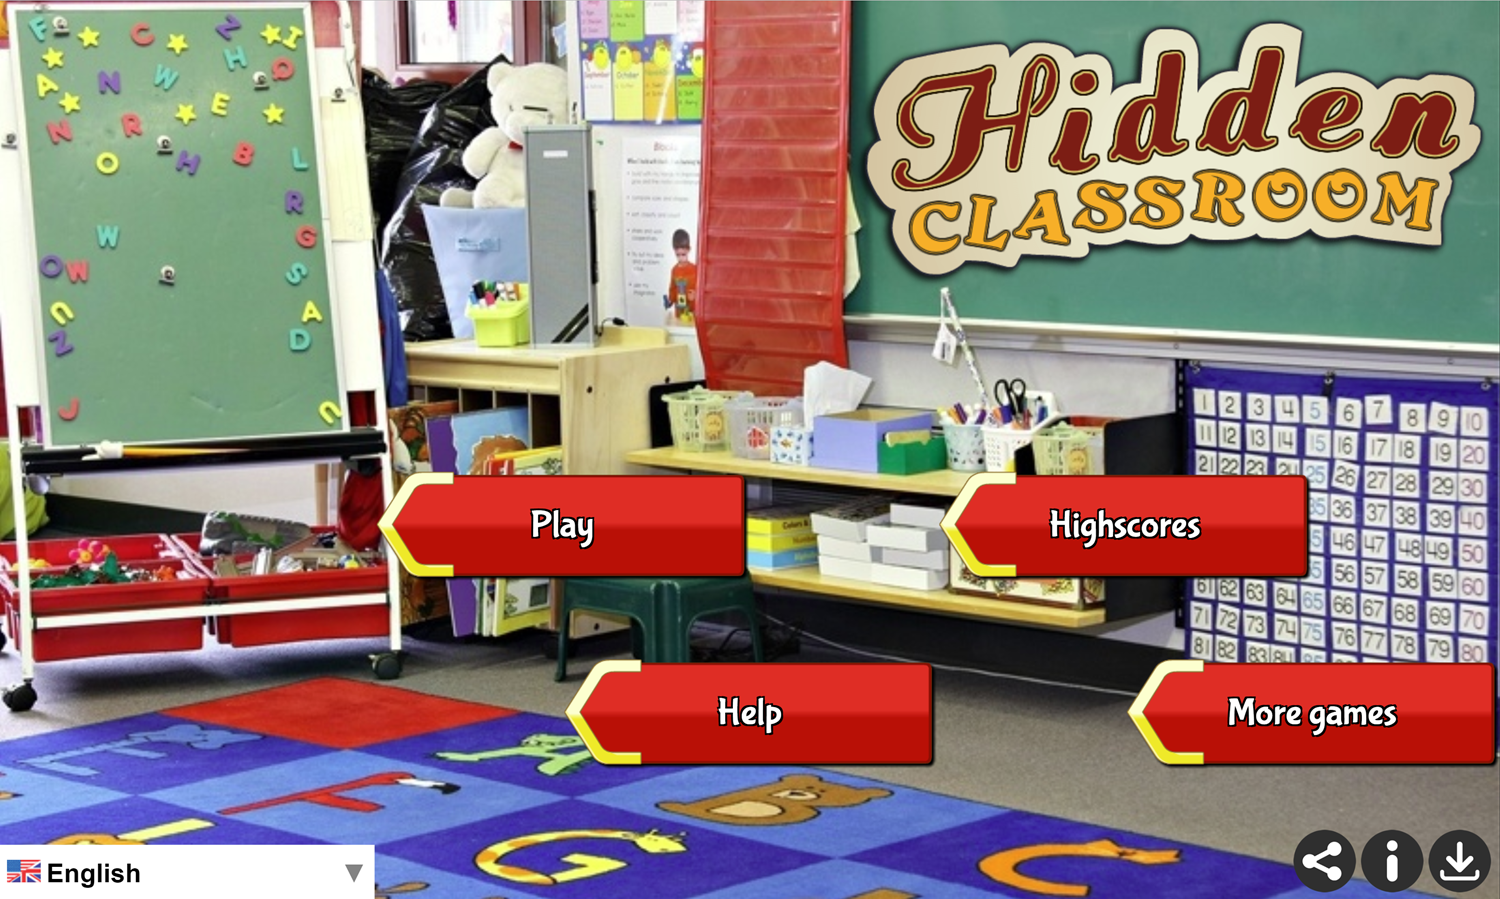 Hidden Classroom Game Welcome Screen Screenshot.